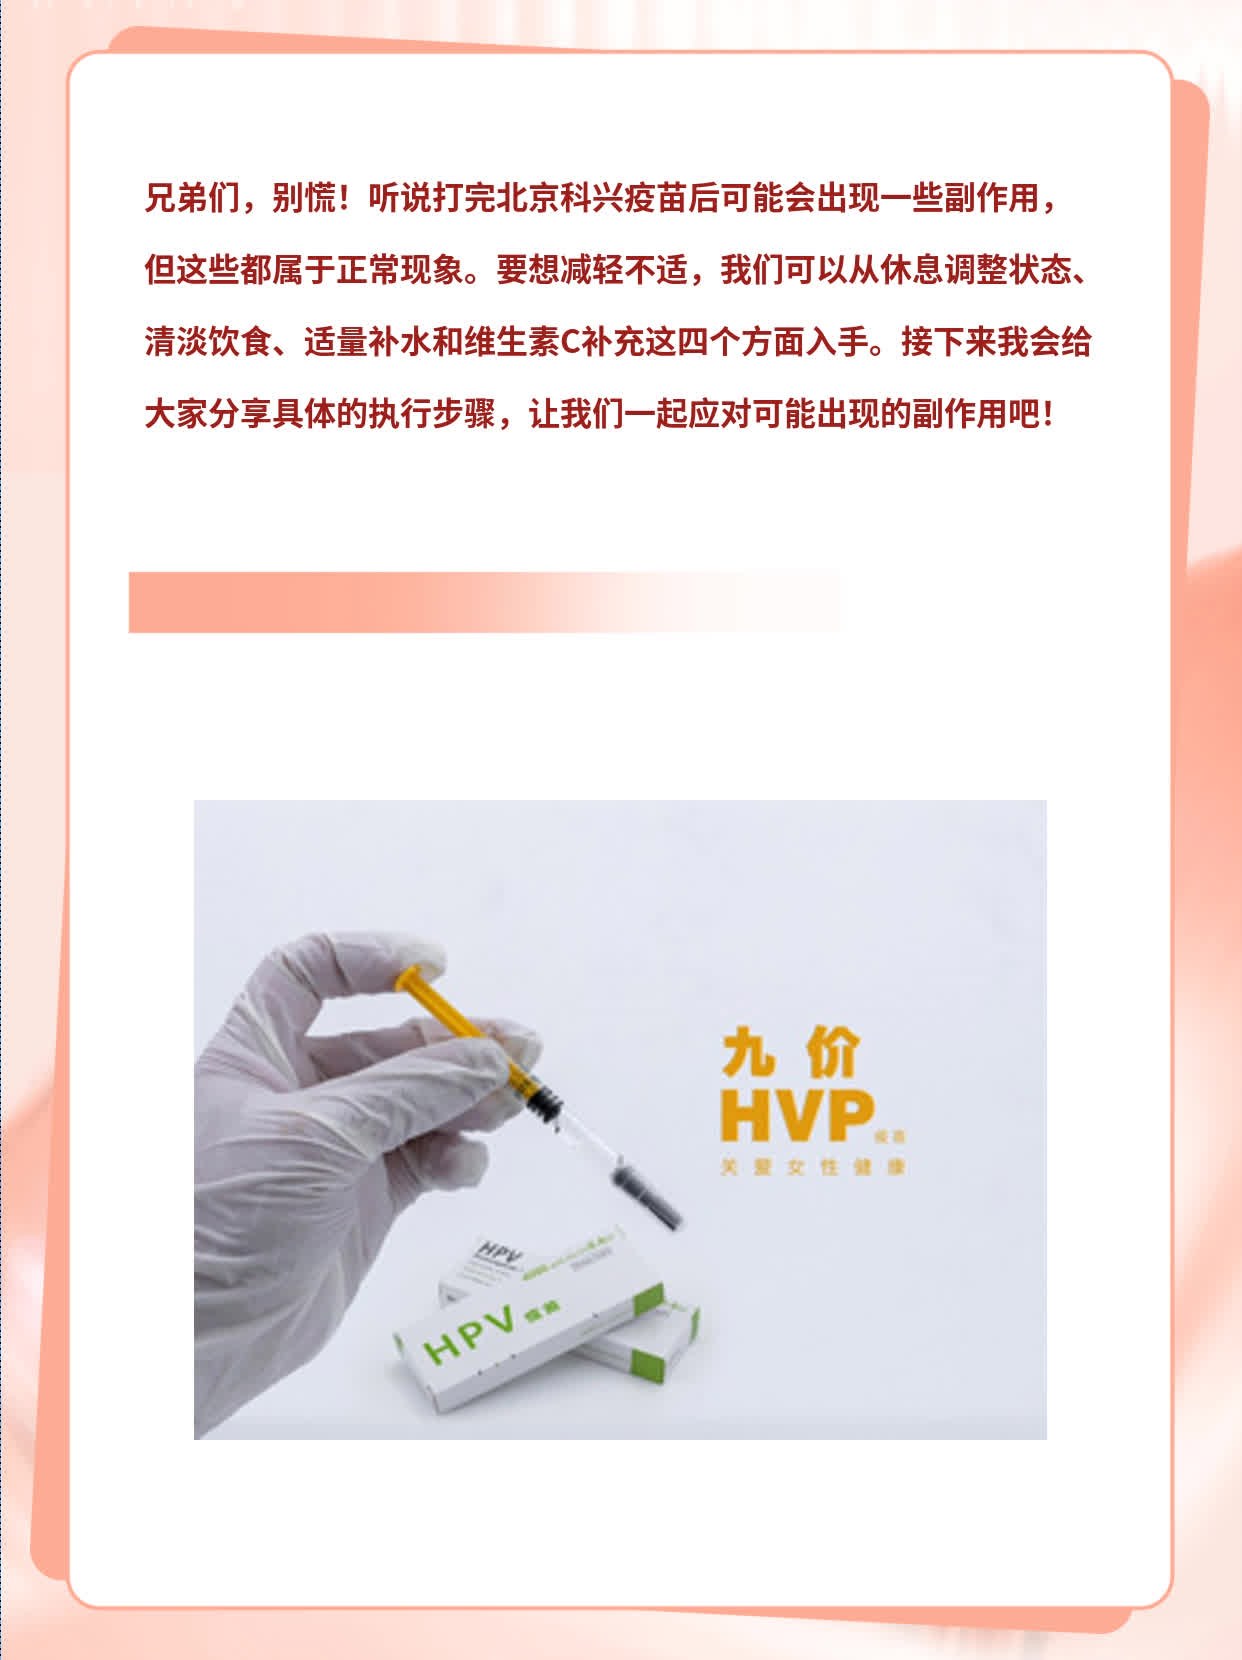 「经验分享」北京科兴疫苗副作用一览表